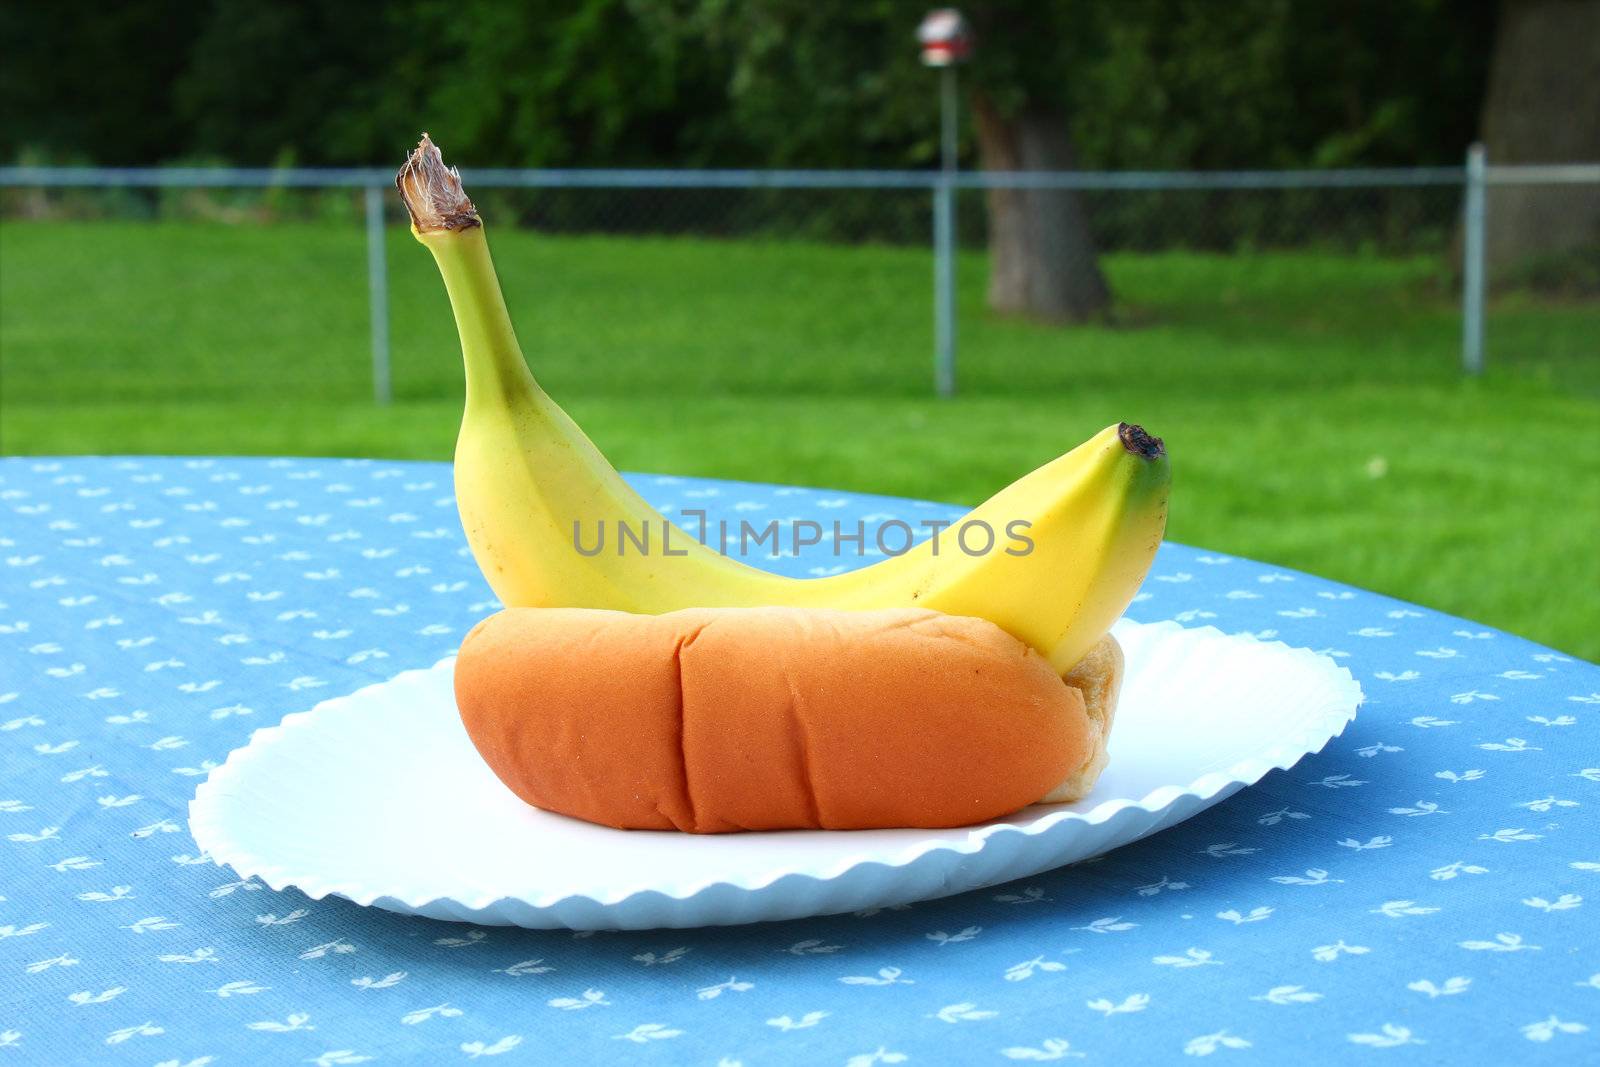 Summer special: Banana-dog in a bun.